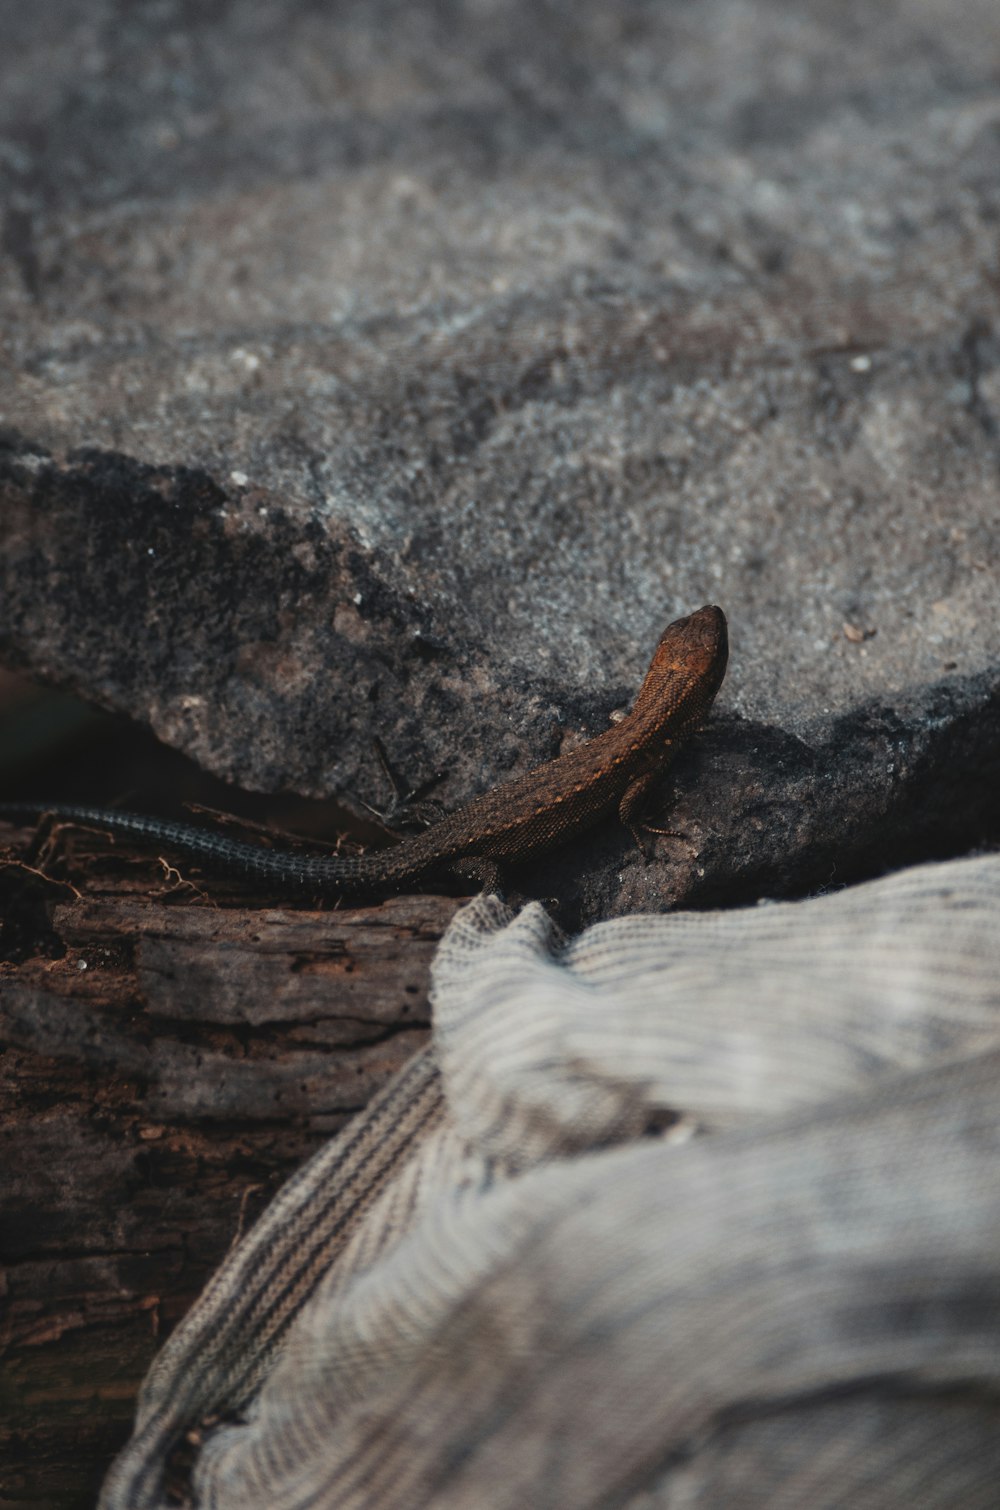 a lizard is sitting on a rock outside